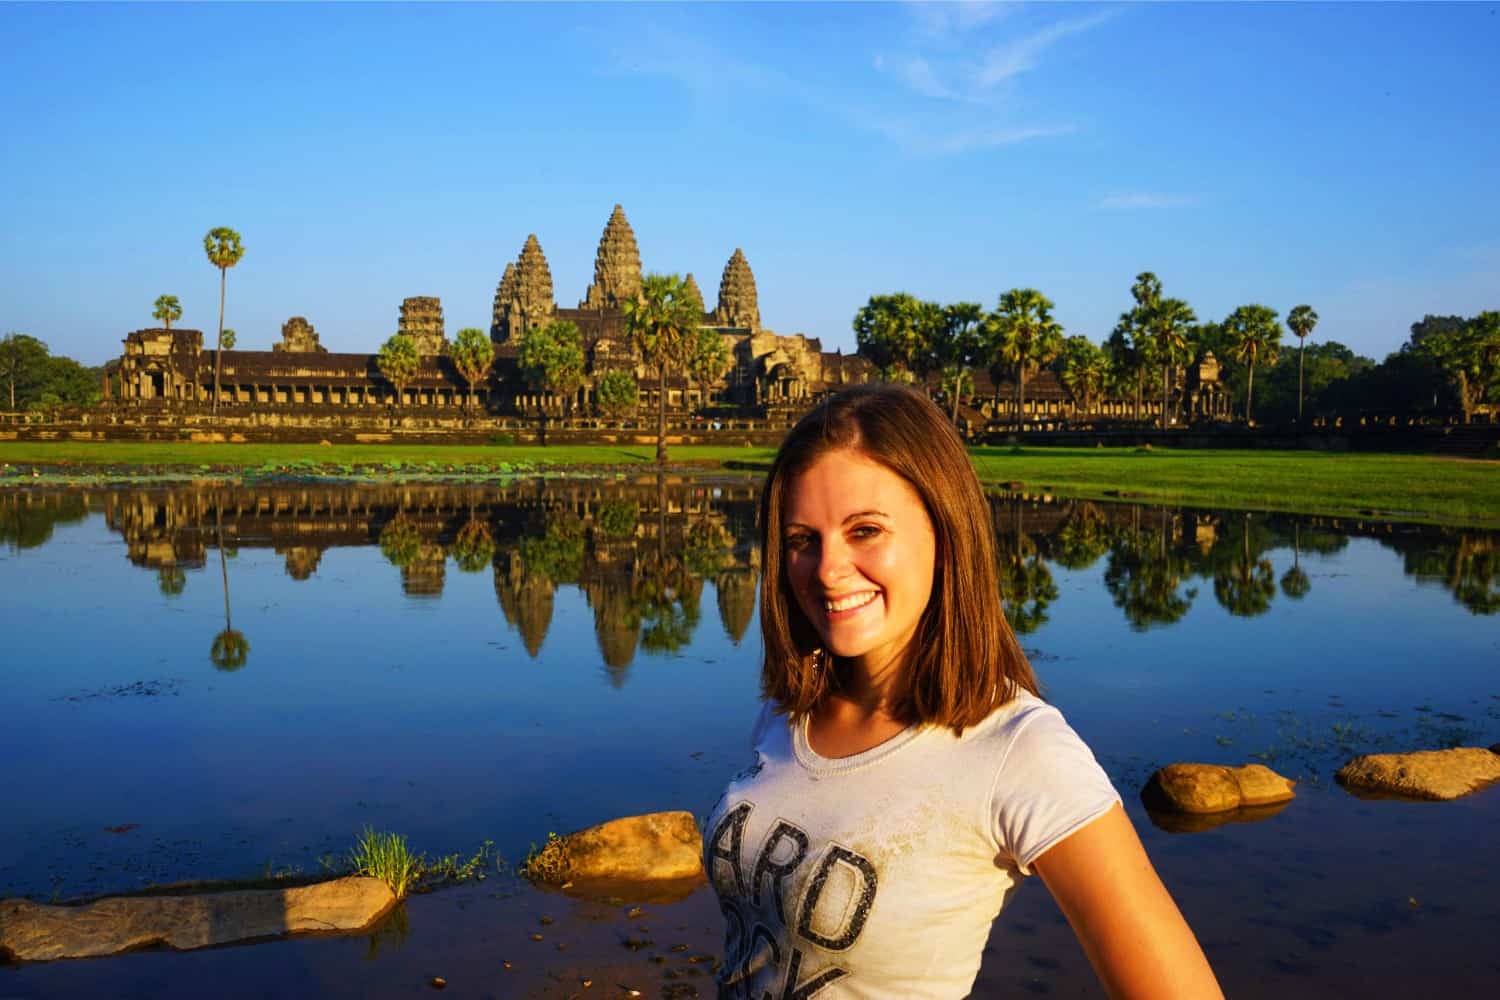 Lauren at Angkor Wat